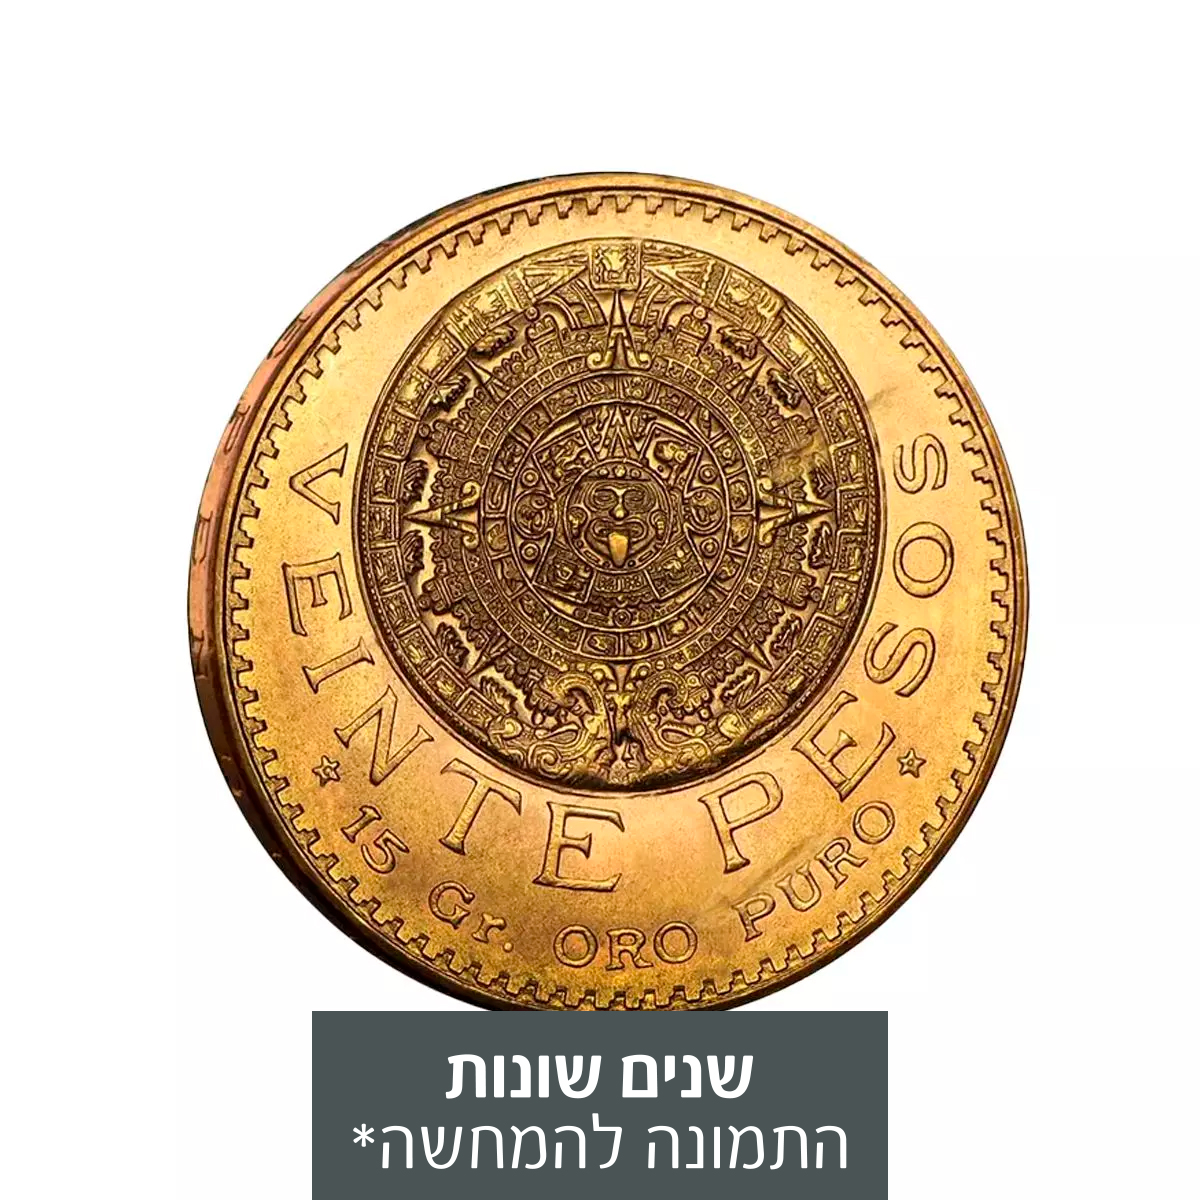 מטבע זהב 20 פזוס מקסיקני שנים שונות